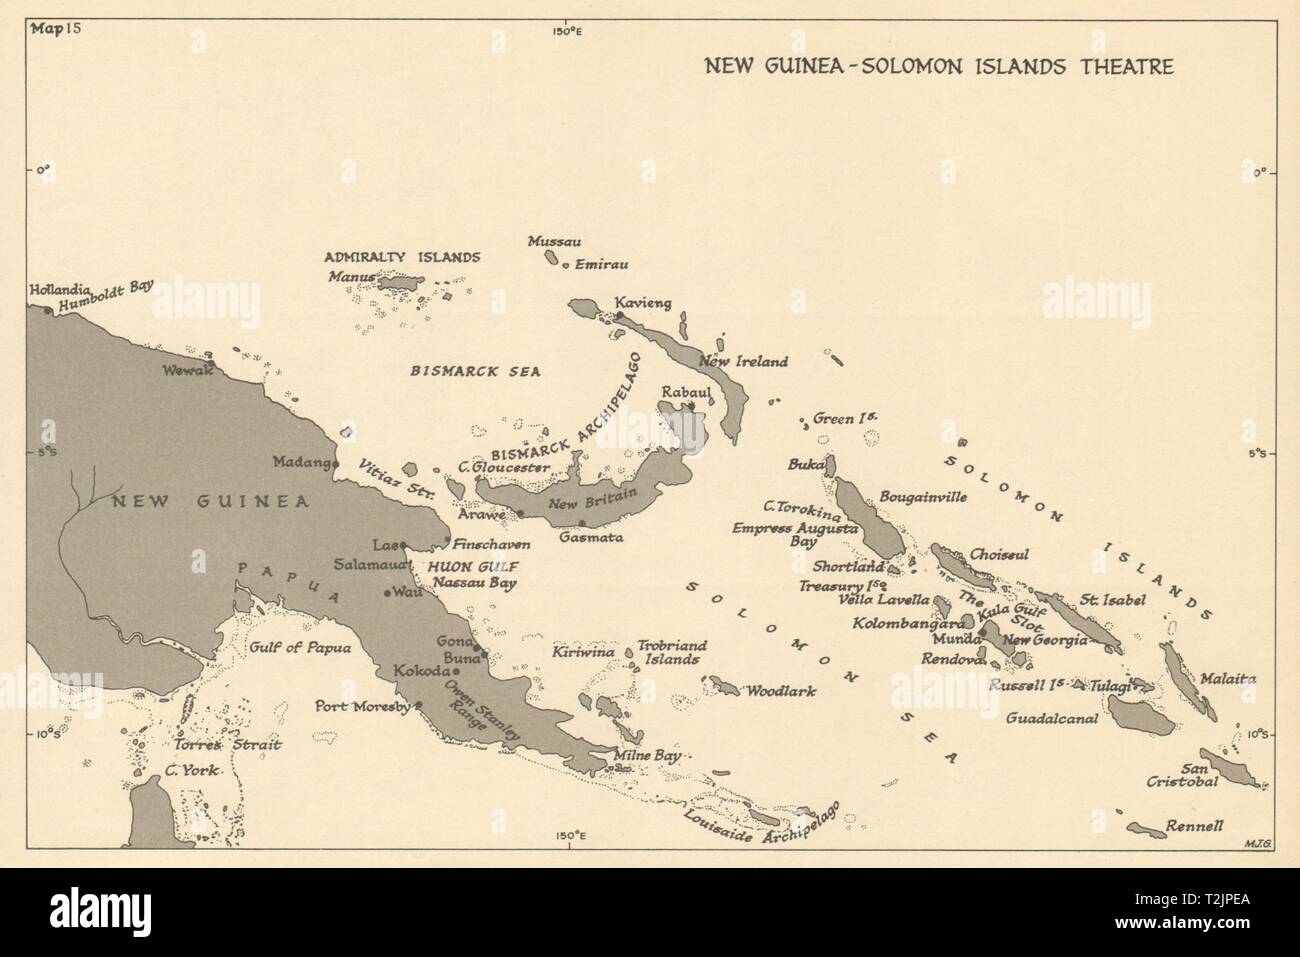 Nueva Guinea y las Islas Salomón Teatro. Guerra Mundial 2. Mapa antiguo de  1954 pacífico Fotografía de stock - Alamy